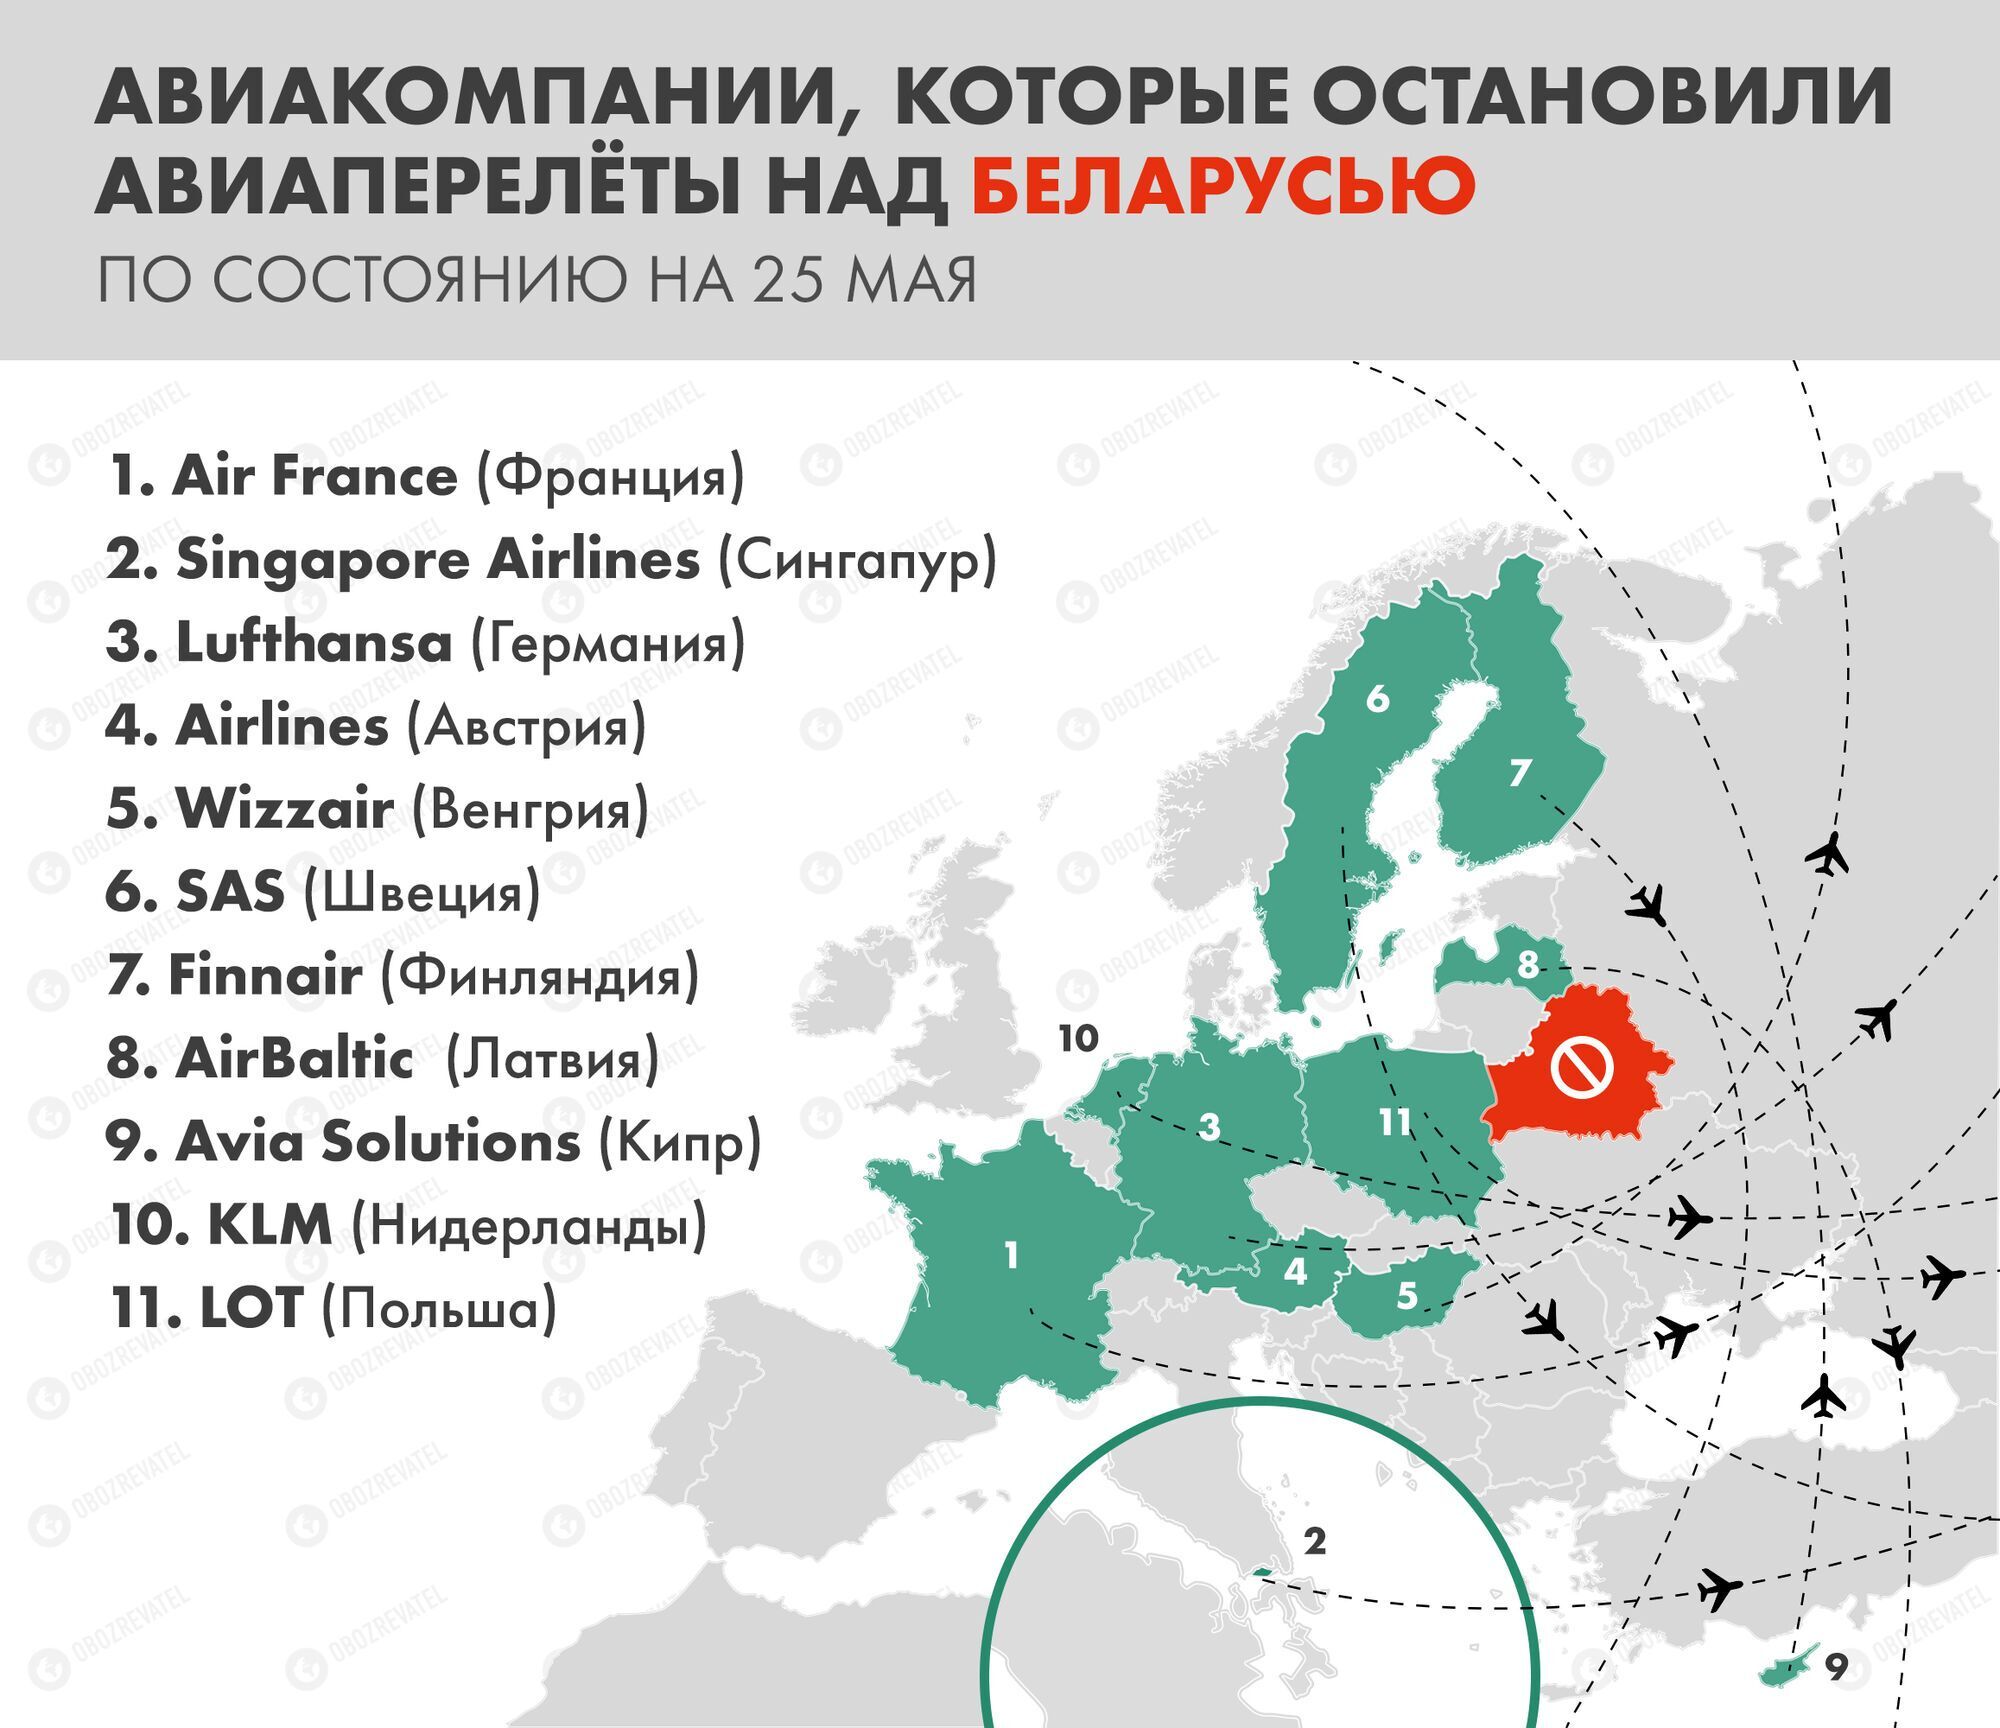 Список компаний, прекративших полеты над Беларусью